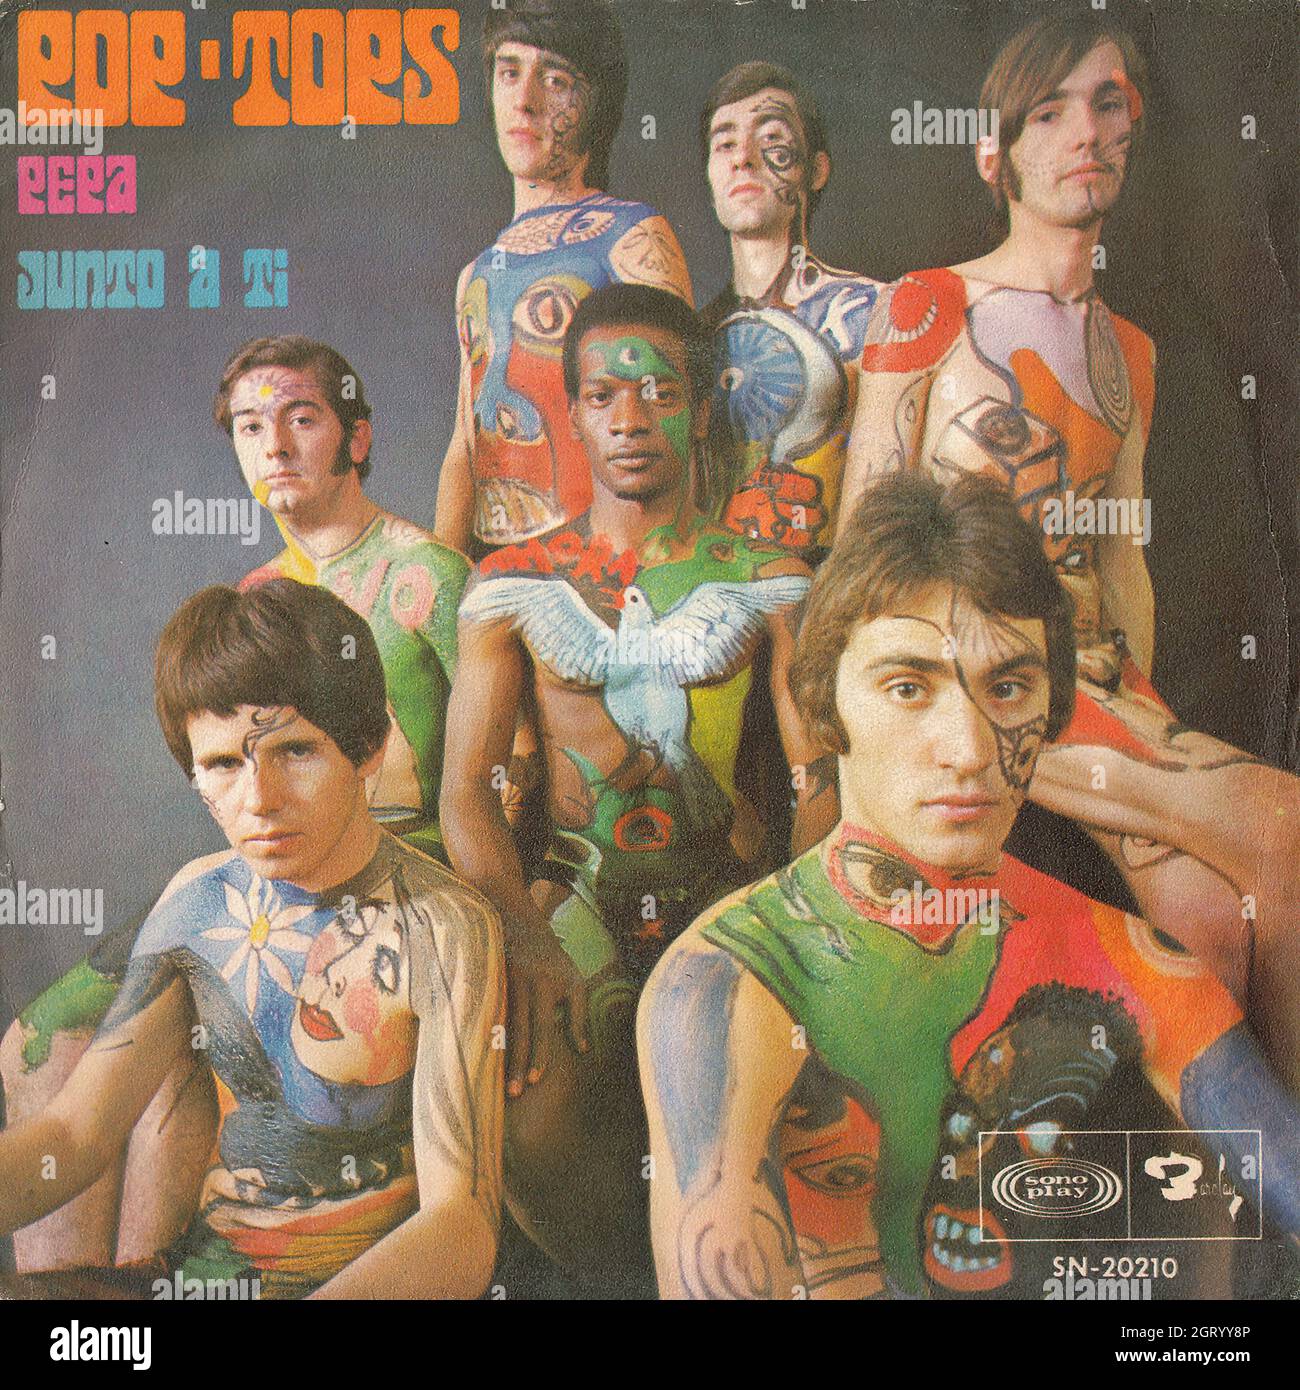 Pop-Tops - Pepa - Junto a ti 45rpm - Vintage Vinyl Record Cover Stock Photo